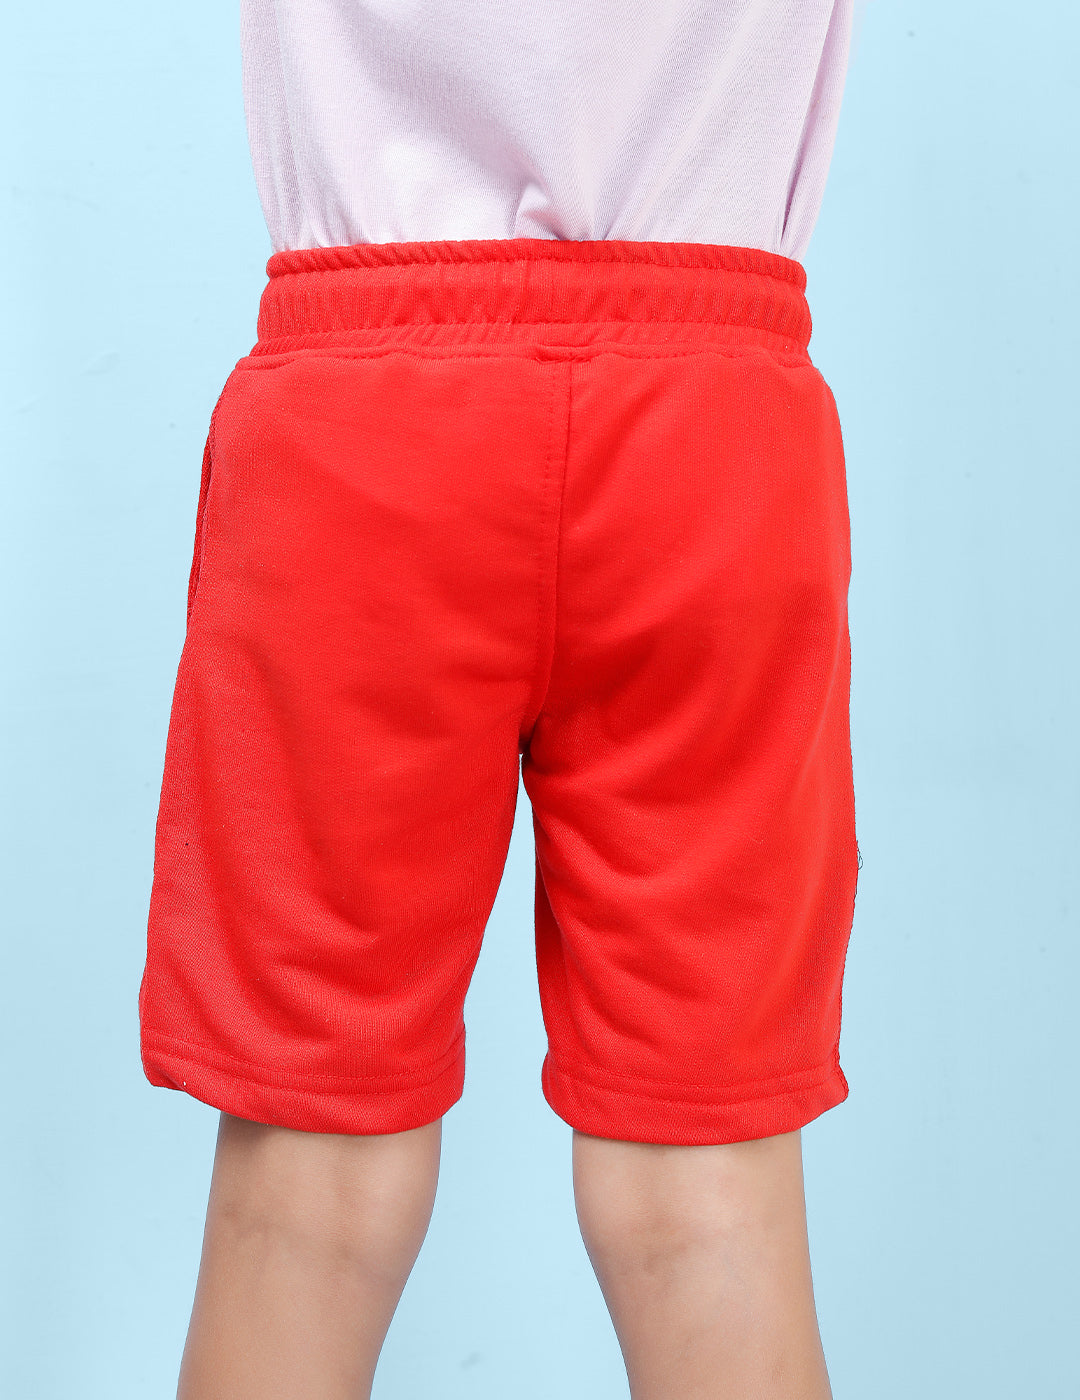 Nusyl Unioue Printed Red Boys Shorts